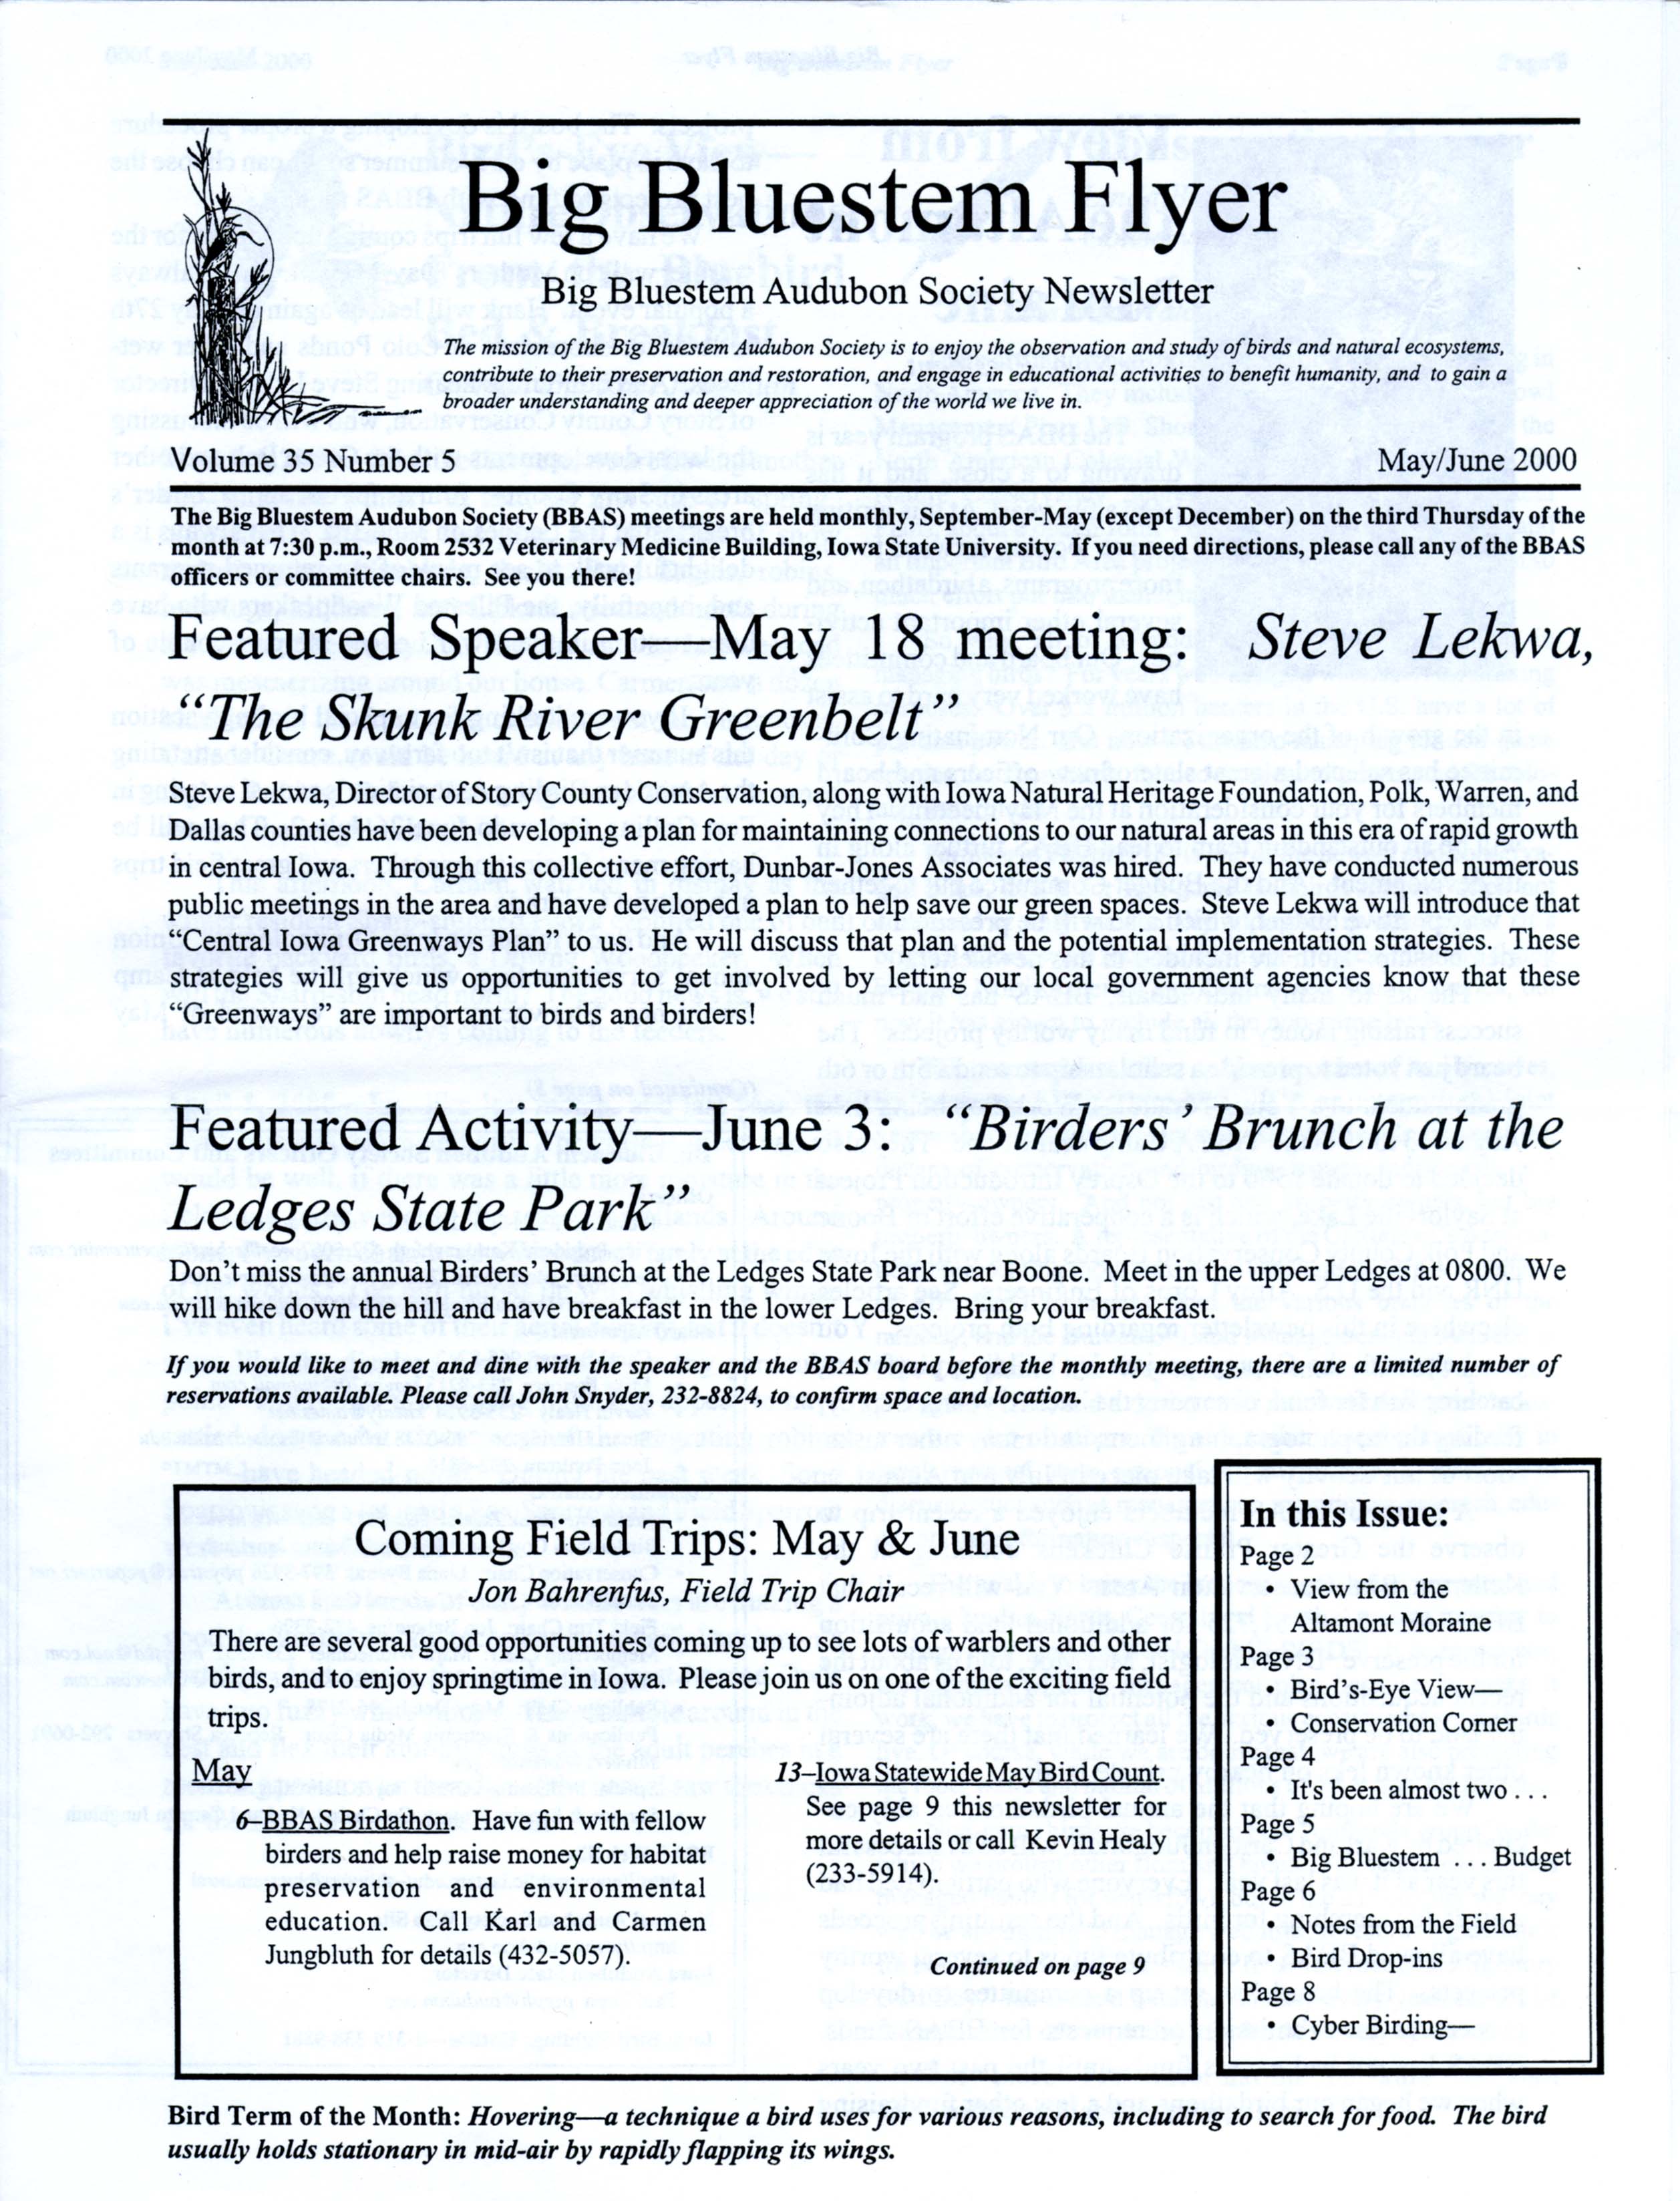 Big Bluestem Flyer, Volume 35, Number 5, May/June 2000